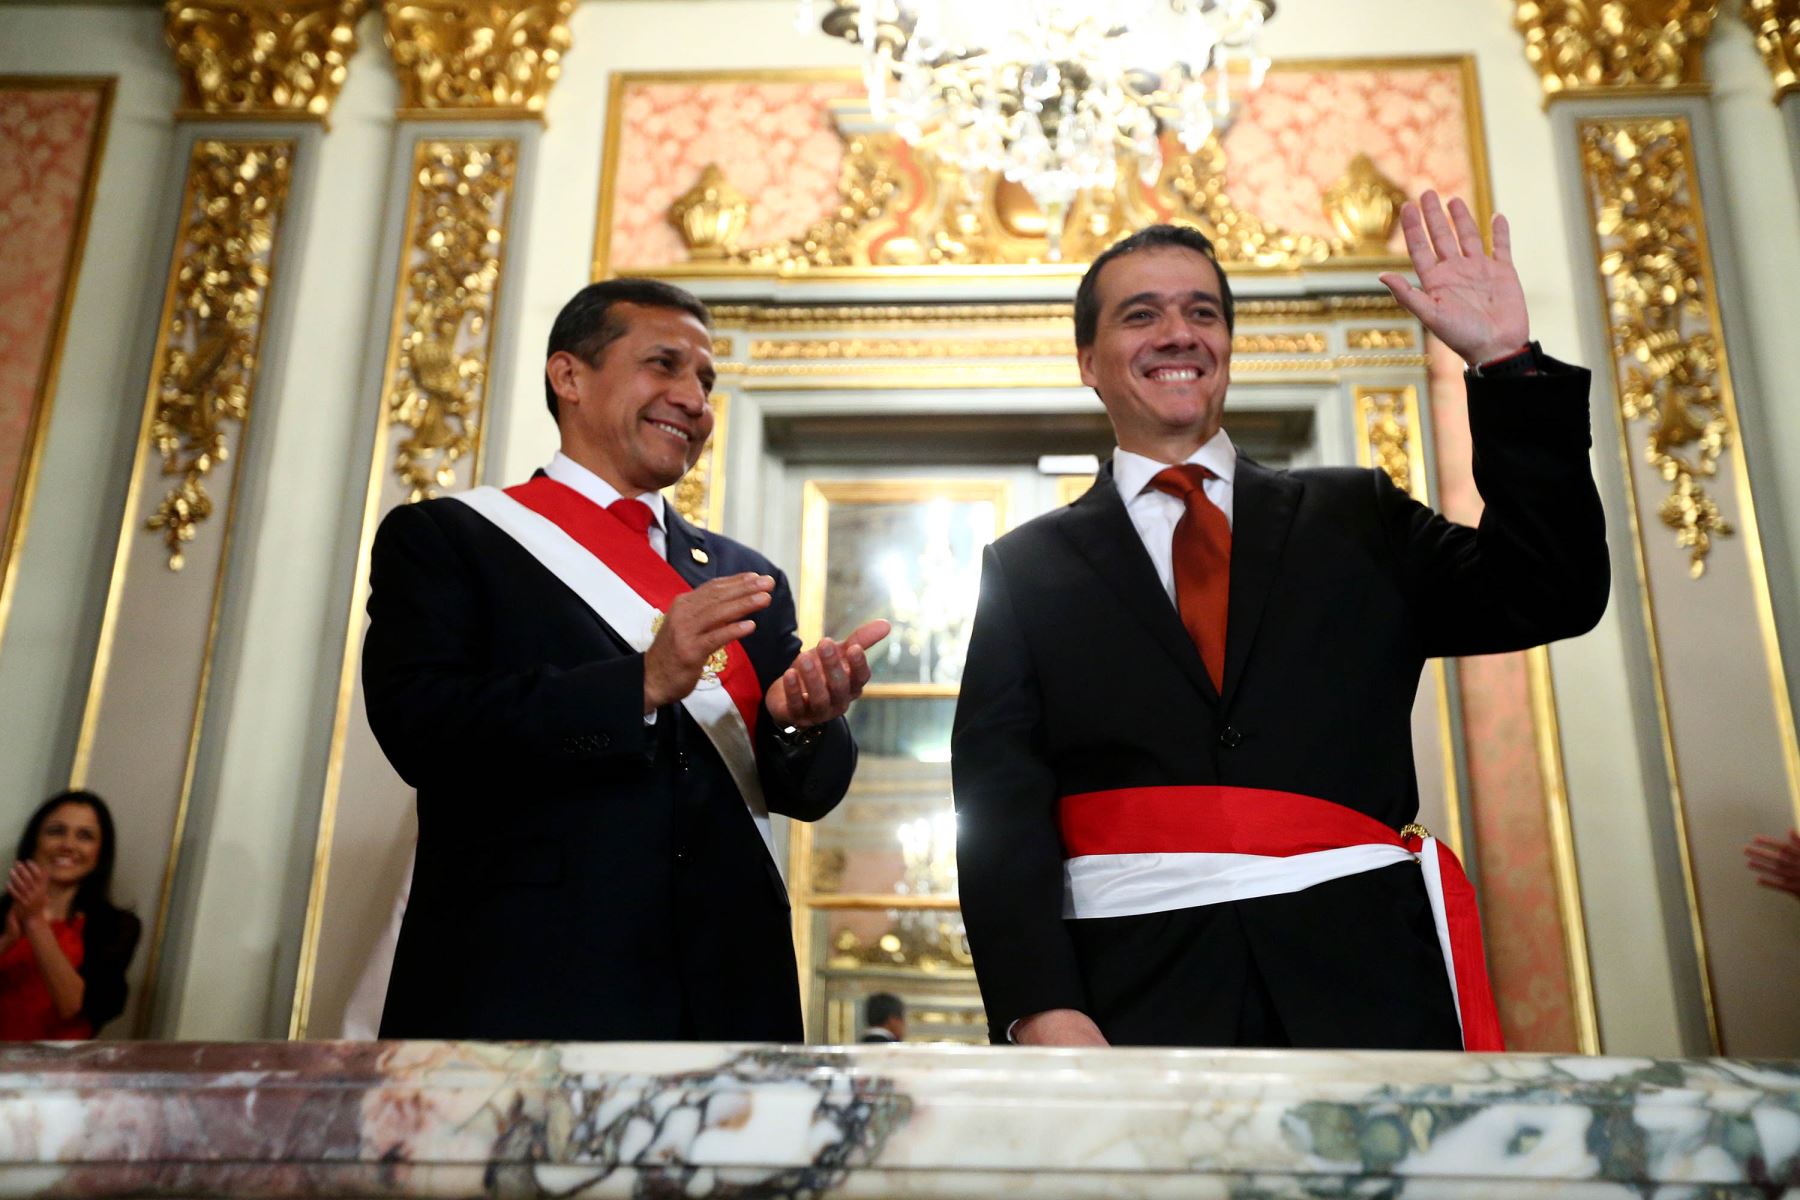 El Presidente de la República, Ollanta Humala Tasso, tomó juramento al nuevo ministro de Economía y Finanzas, Alonso Segura.Foto: ANDINA/Prensa Presidencia